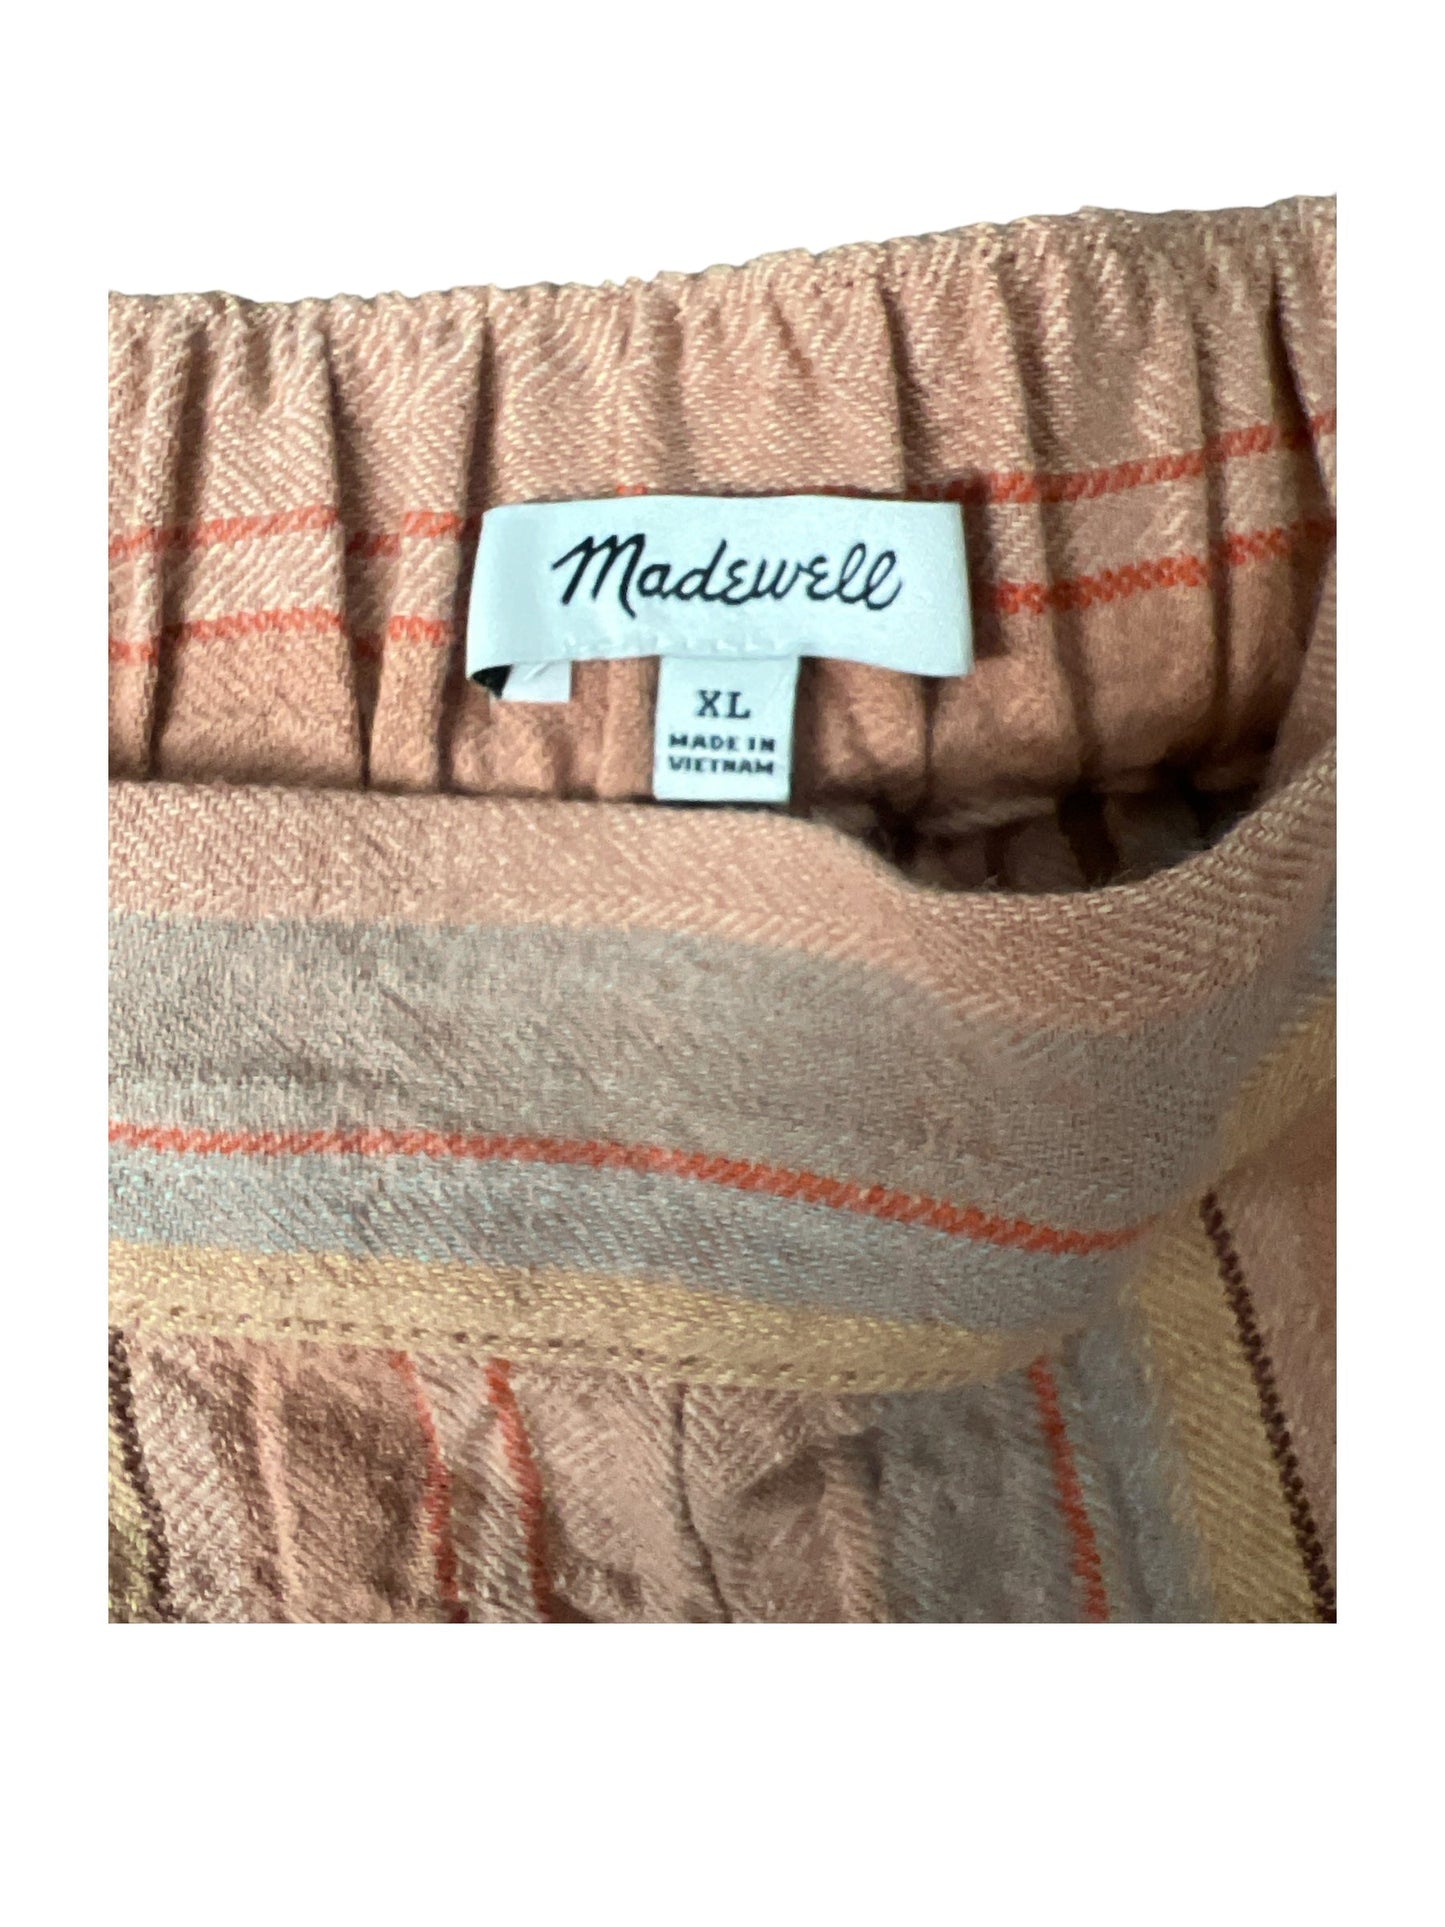 Orange Shorts Madewell, Size Xl